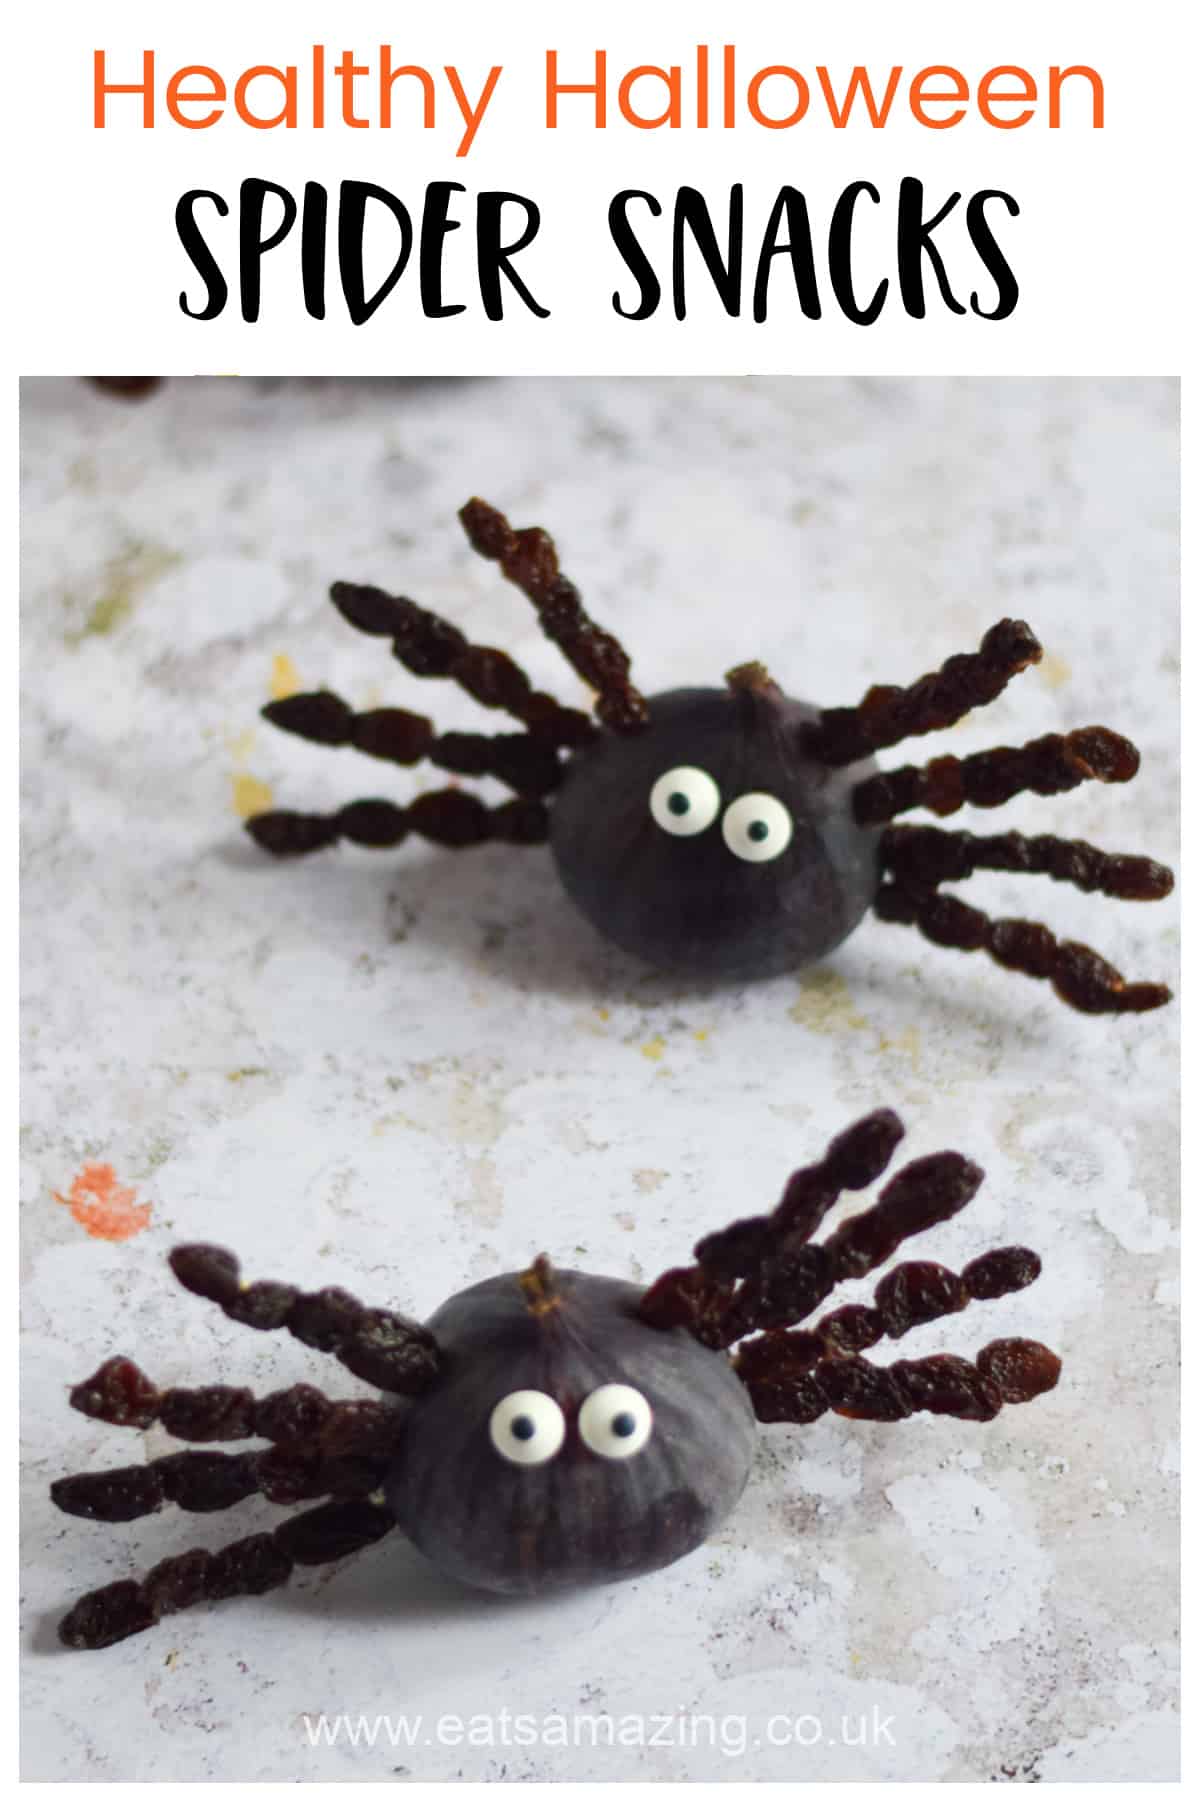 Una idea divertida para un plato saludable para la fiesta de Halloween: estas arañas de higo y pasas son un plato espeluznante genial para los niños con un tema de araña